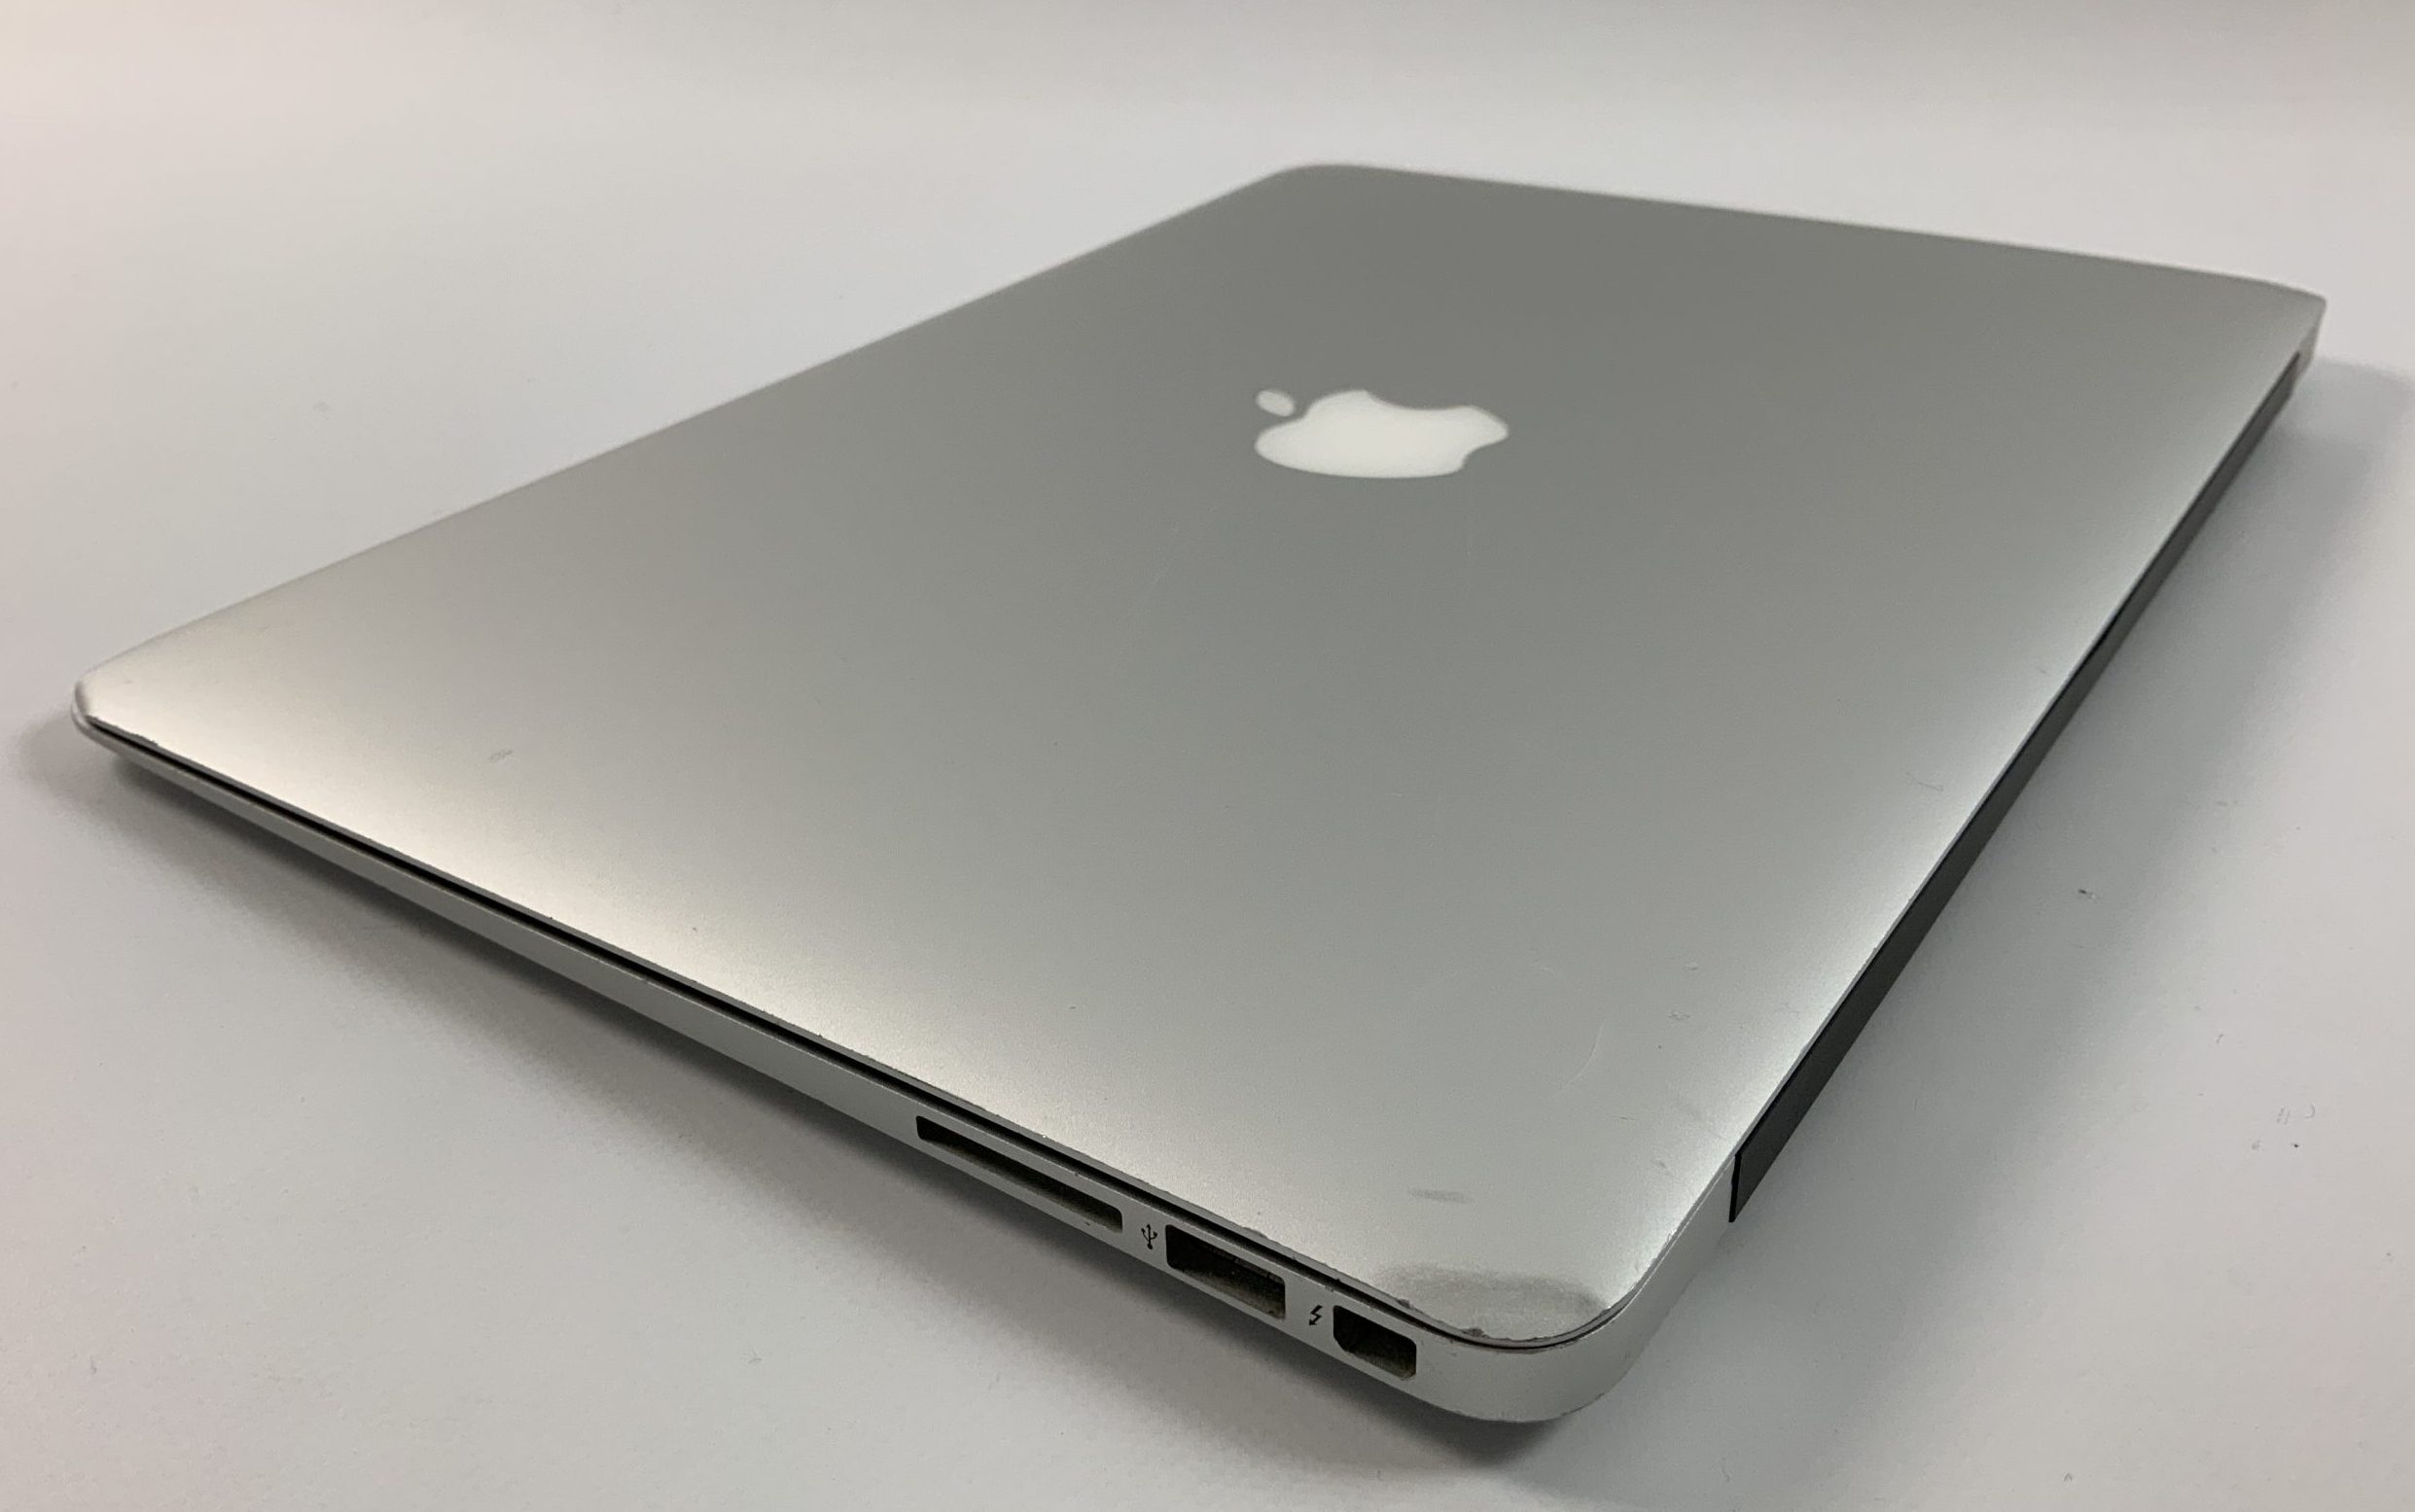 MacBook Air 13" Mid 2017 (Intel Core i5 1.8 GHz 8 GB RAM 256 GB SSD), Intel Core i5 1.8 GHz, 8 GB RAM, 256 GB SSD, immagine 4